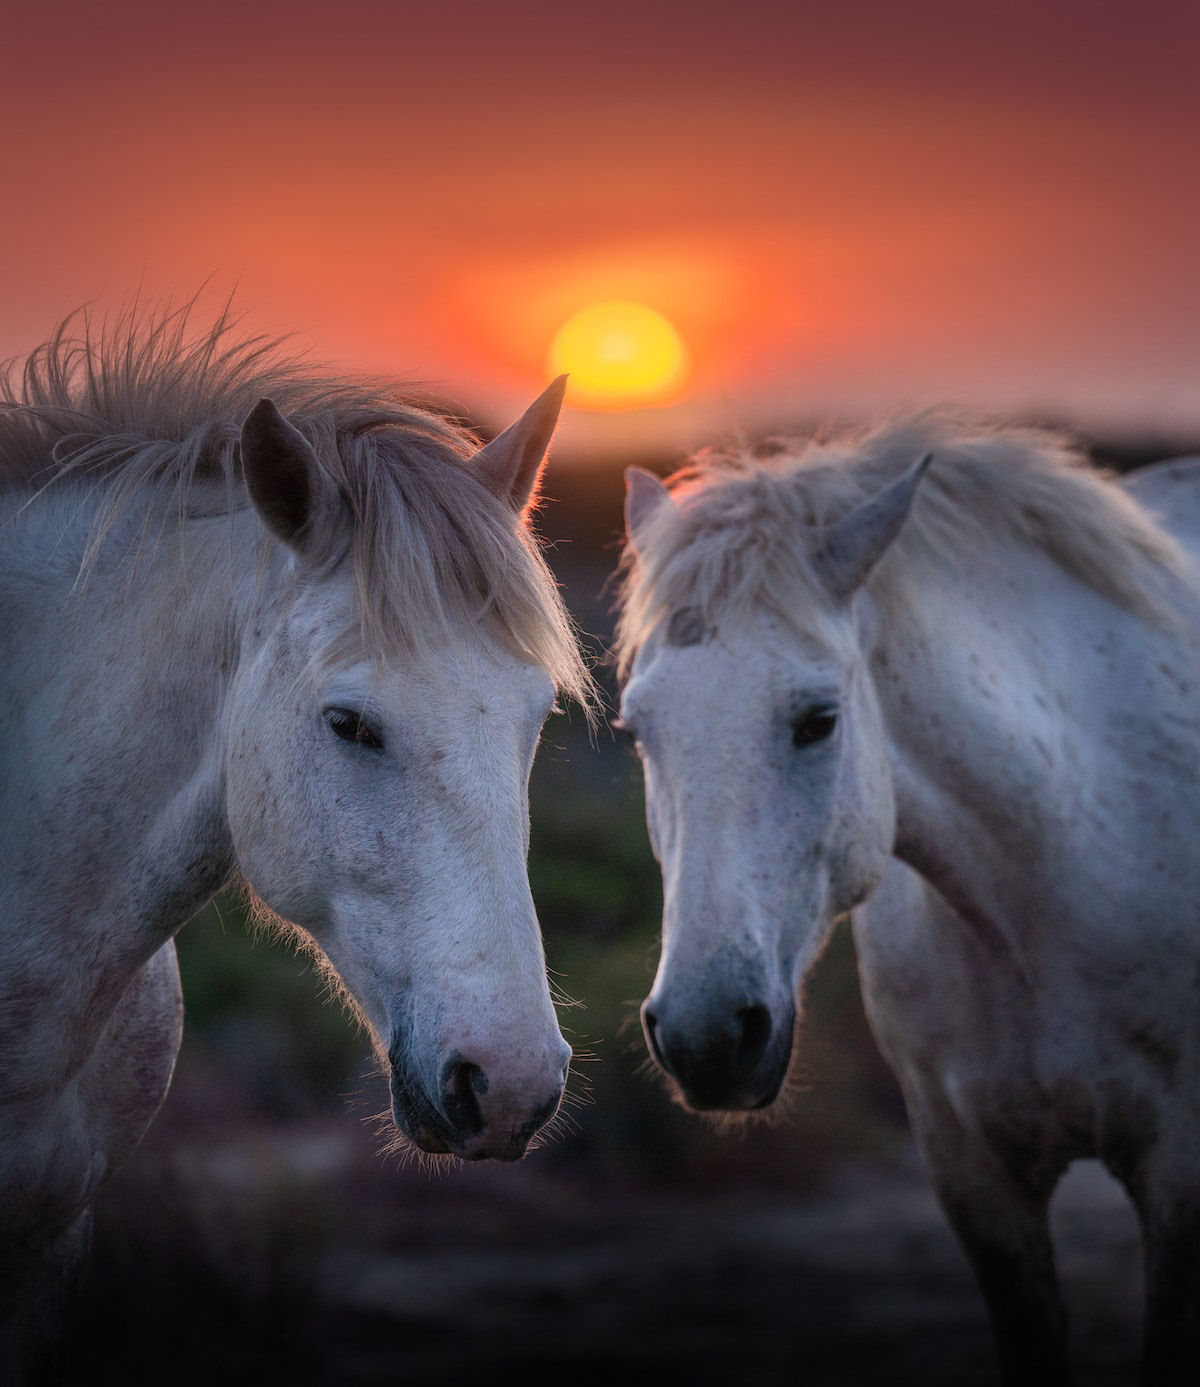 Fotos mostram a beleza majestosa dos cavalos de Camargue no sul da França 05